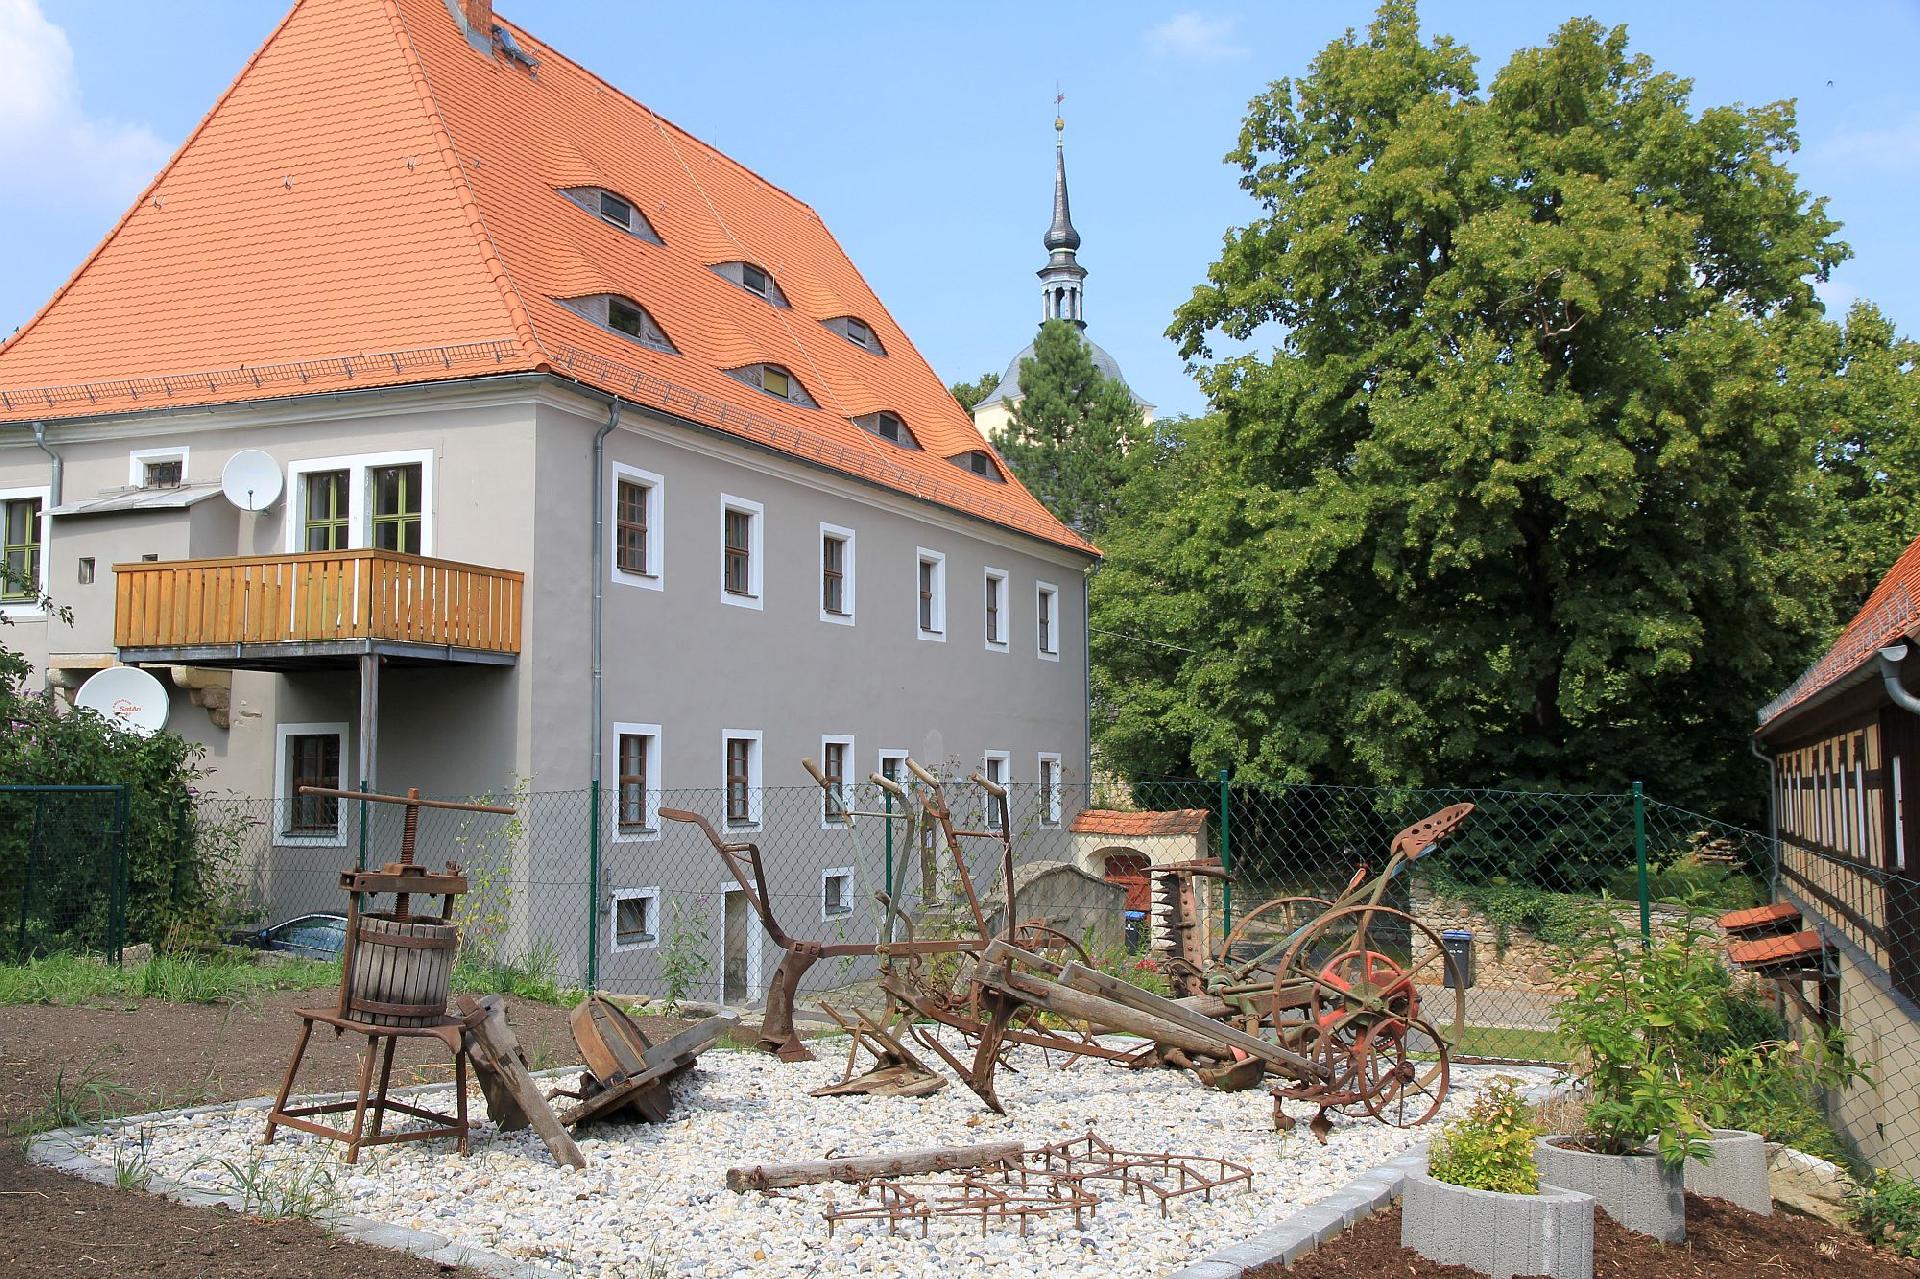 Wohnung in Maxen mit Terrasse, Garten und Grill Ferienwohnung in Deutschland